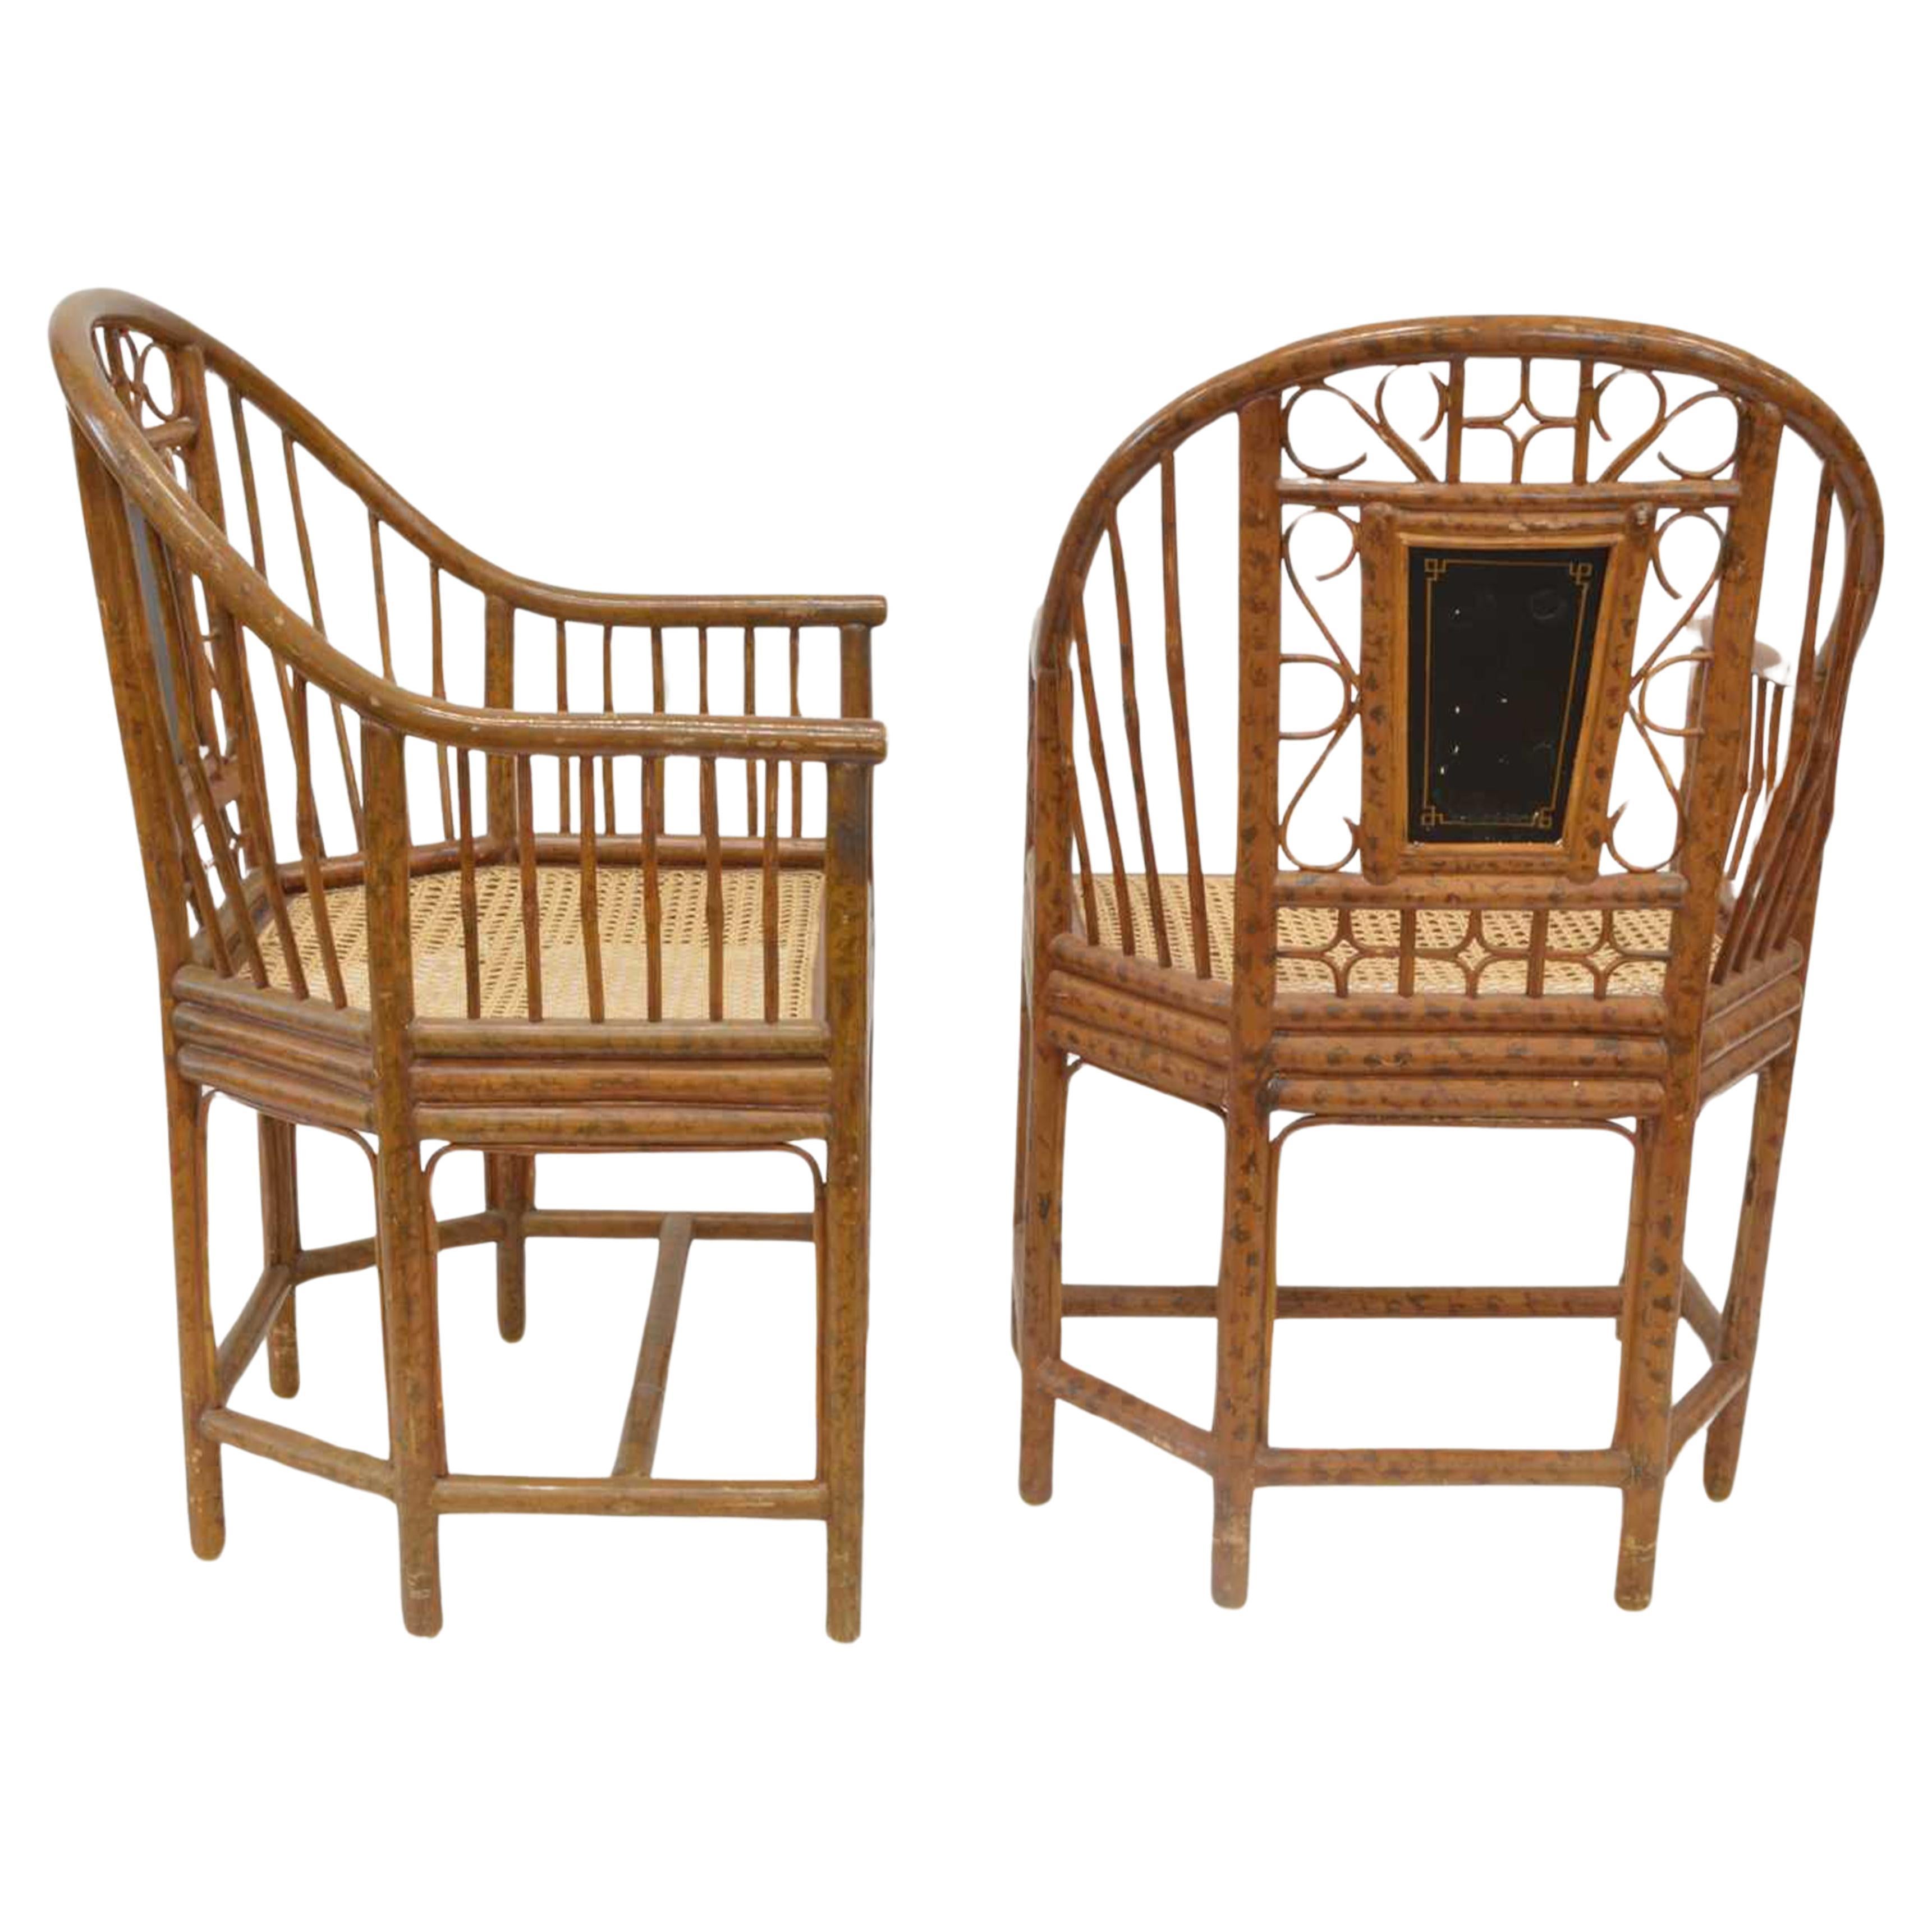 Paire de chaises de pavillon Brighton faites à la main, avec sièges en cannage et cadre en faux bambou brûlé peint.

Chaque dossier de siège présente des figures de Chinoiserie peintes sur des panneaux dorés.
Panneau peint sur un siège canné en